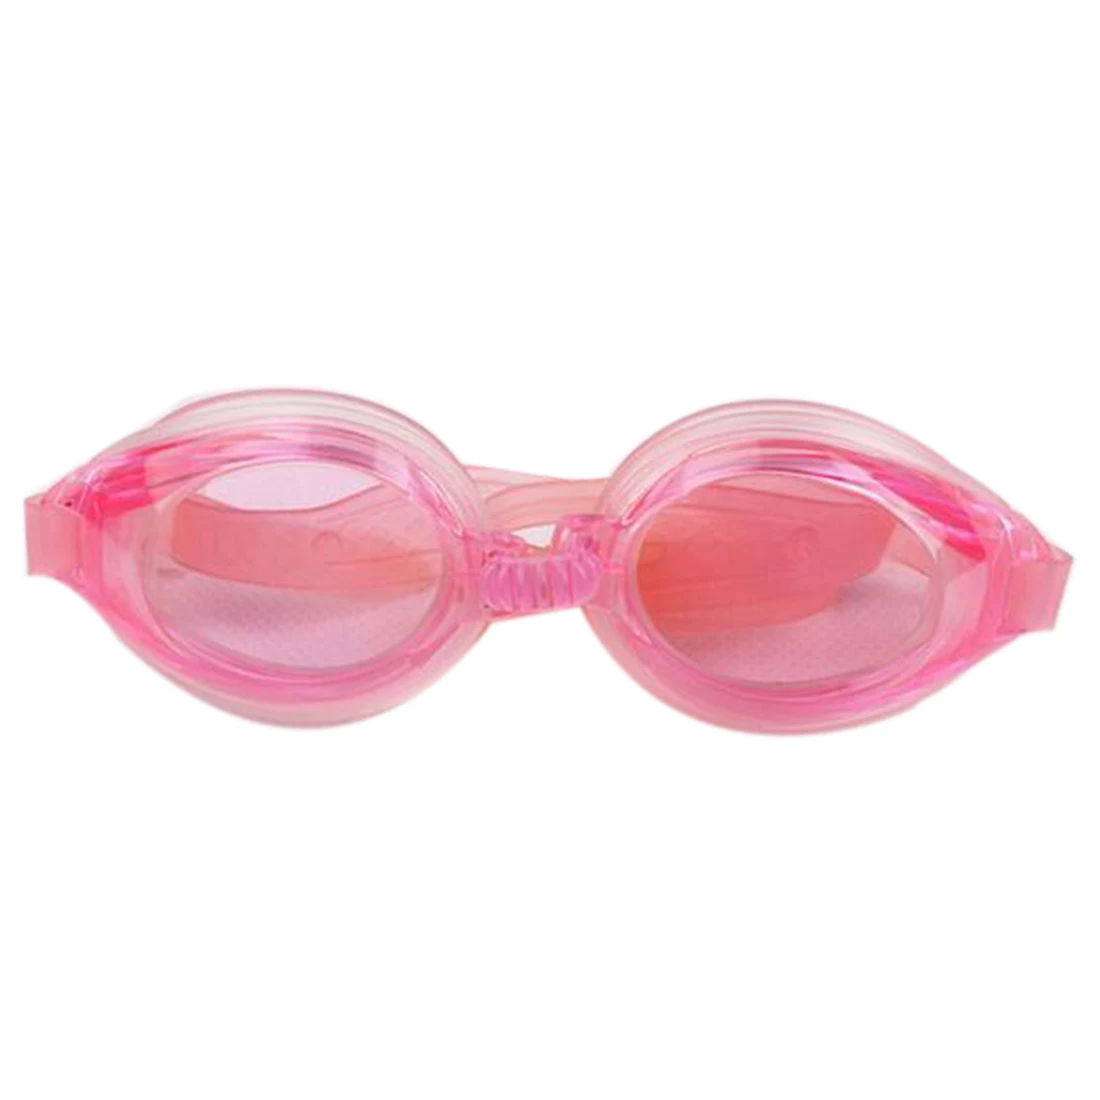 Популярные детские Регулируемые очки для плавания, очки для плавания, очки для глаз, спортивные очки для плавания с ушками и зажимом для носа - Цвет: Pink